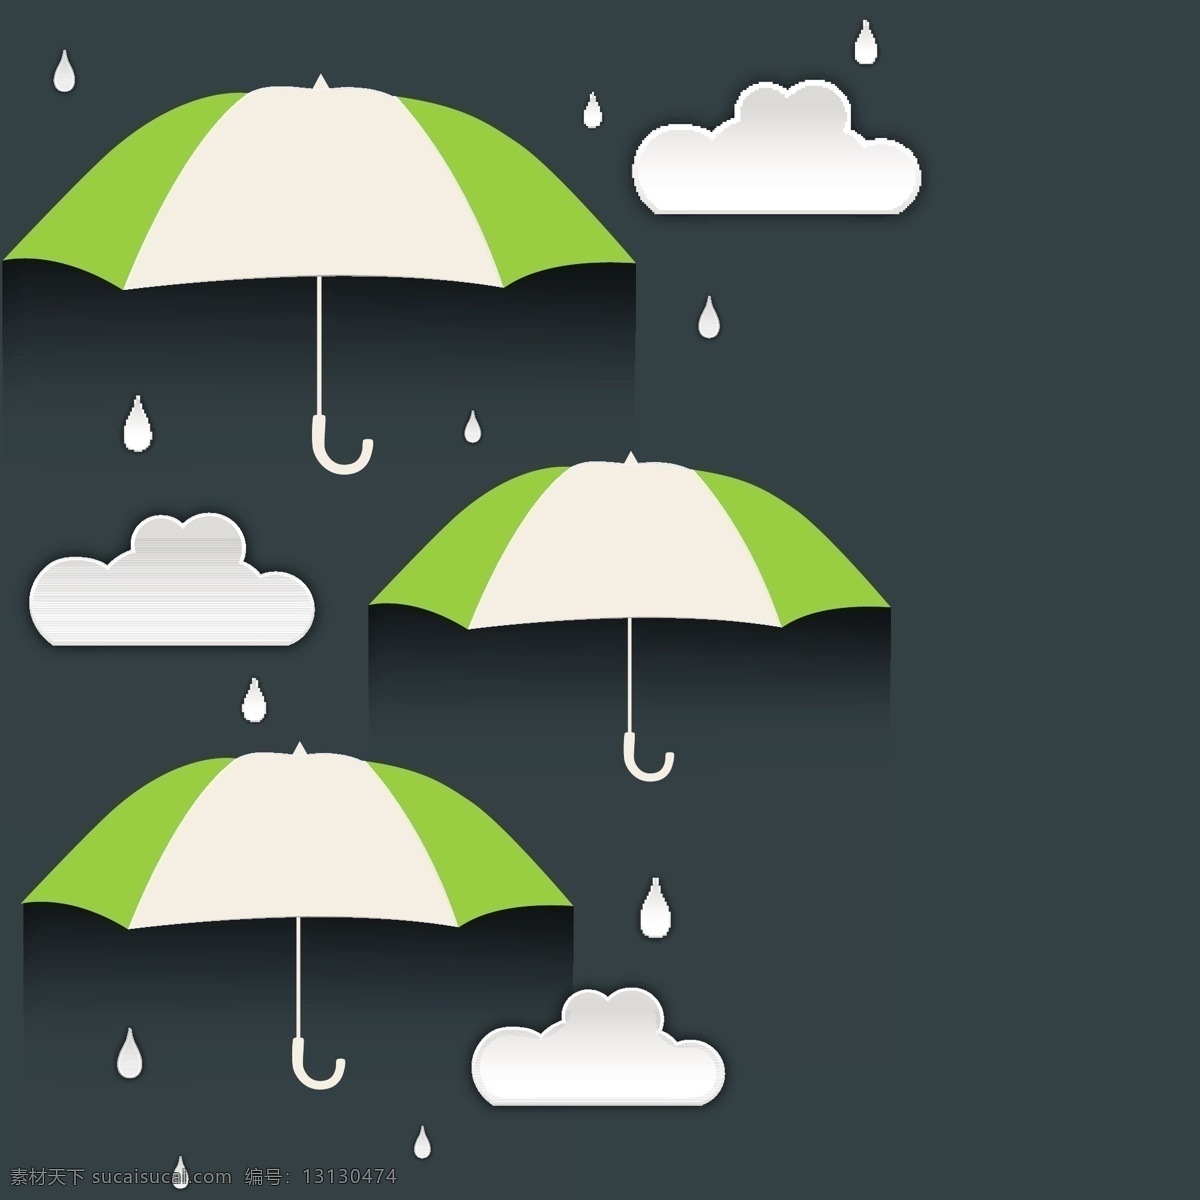 雨天 伞 矢量 背景 web 高分辨率 接口 绿 免费 清洁 条纹 时尚的 现代的 质量 新鲜的 设计新的 新的 hd 元素 用户界面 ui元素 详细的 雨伞 雨 下雨的 云 雨滴 摘要 psd源文件